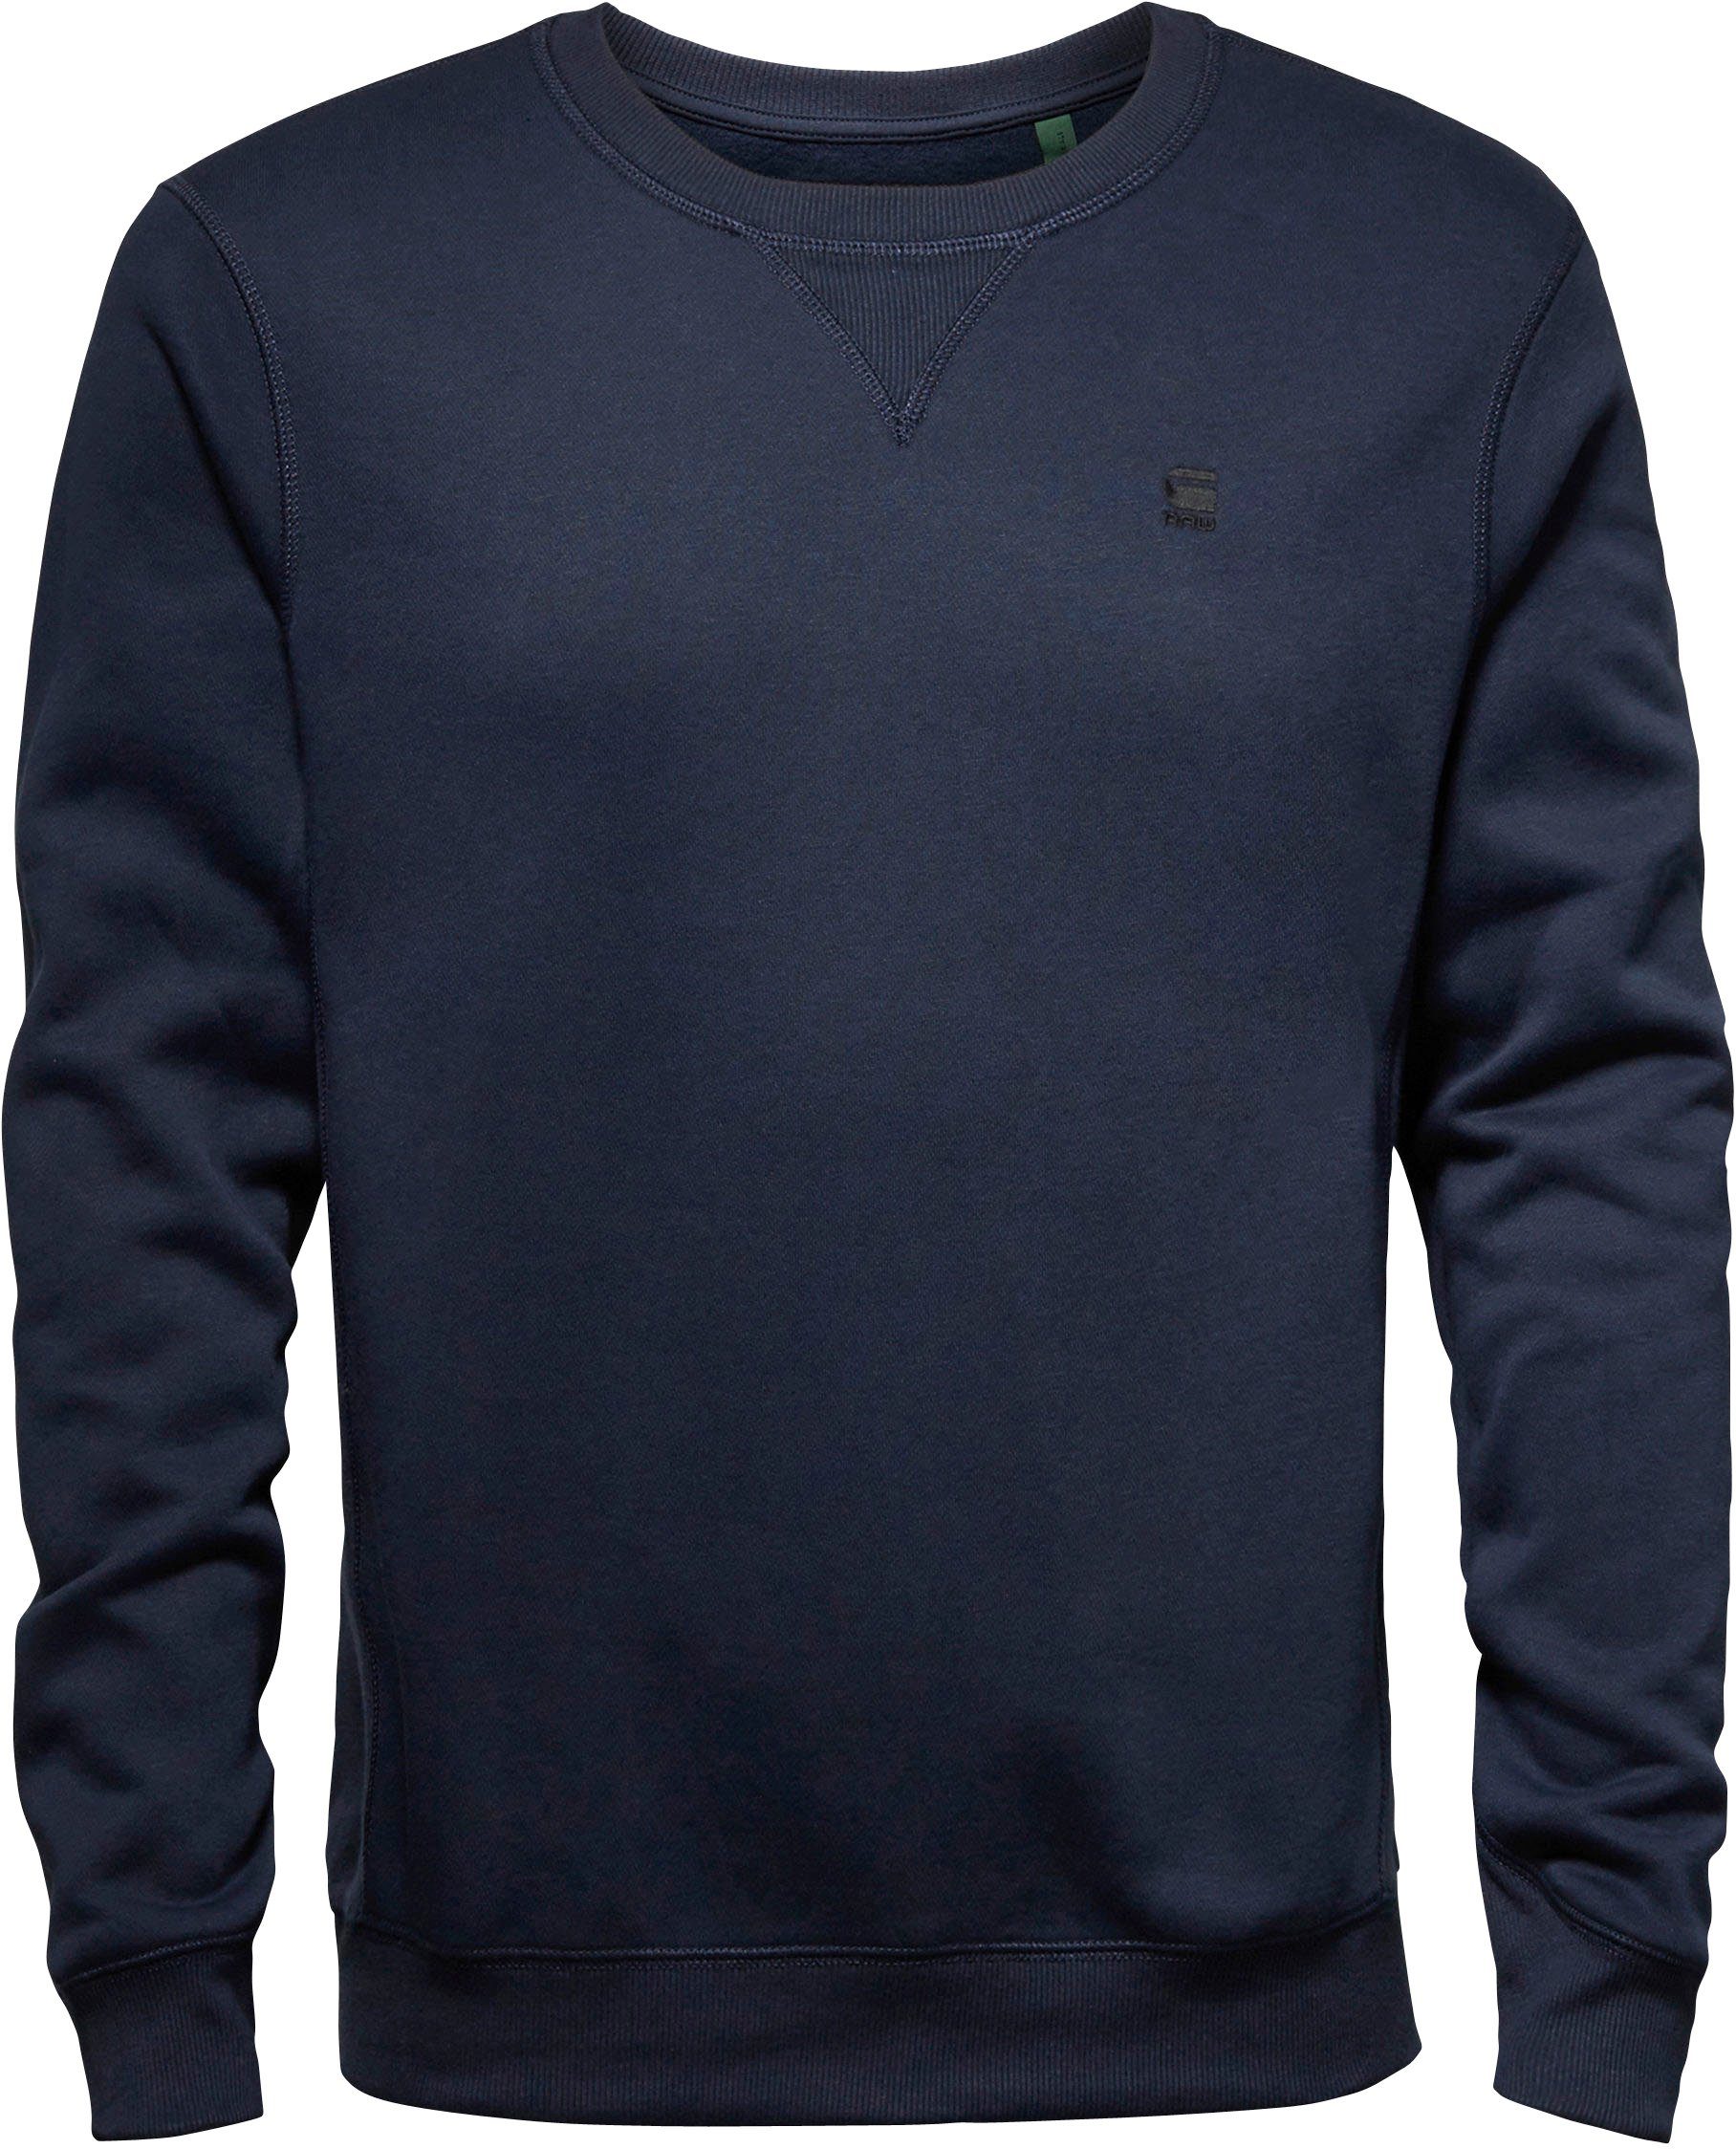 Premium RAW sartho G-Star blue Pacior Sweatshirt Sweat Core